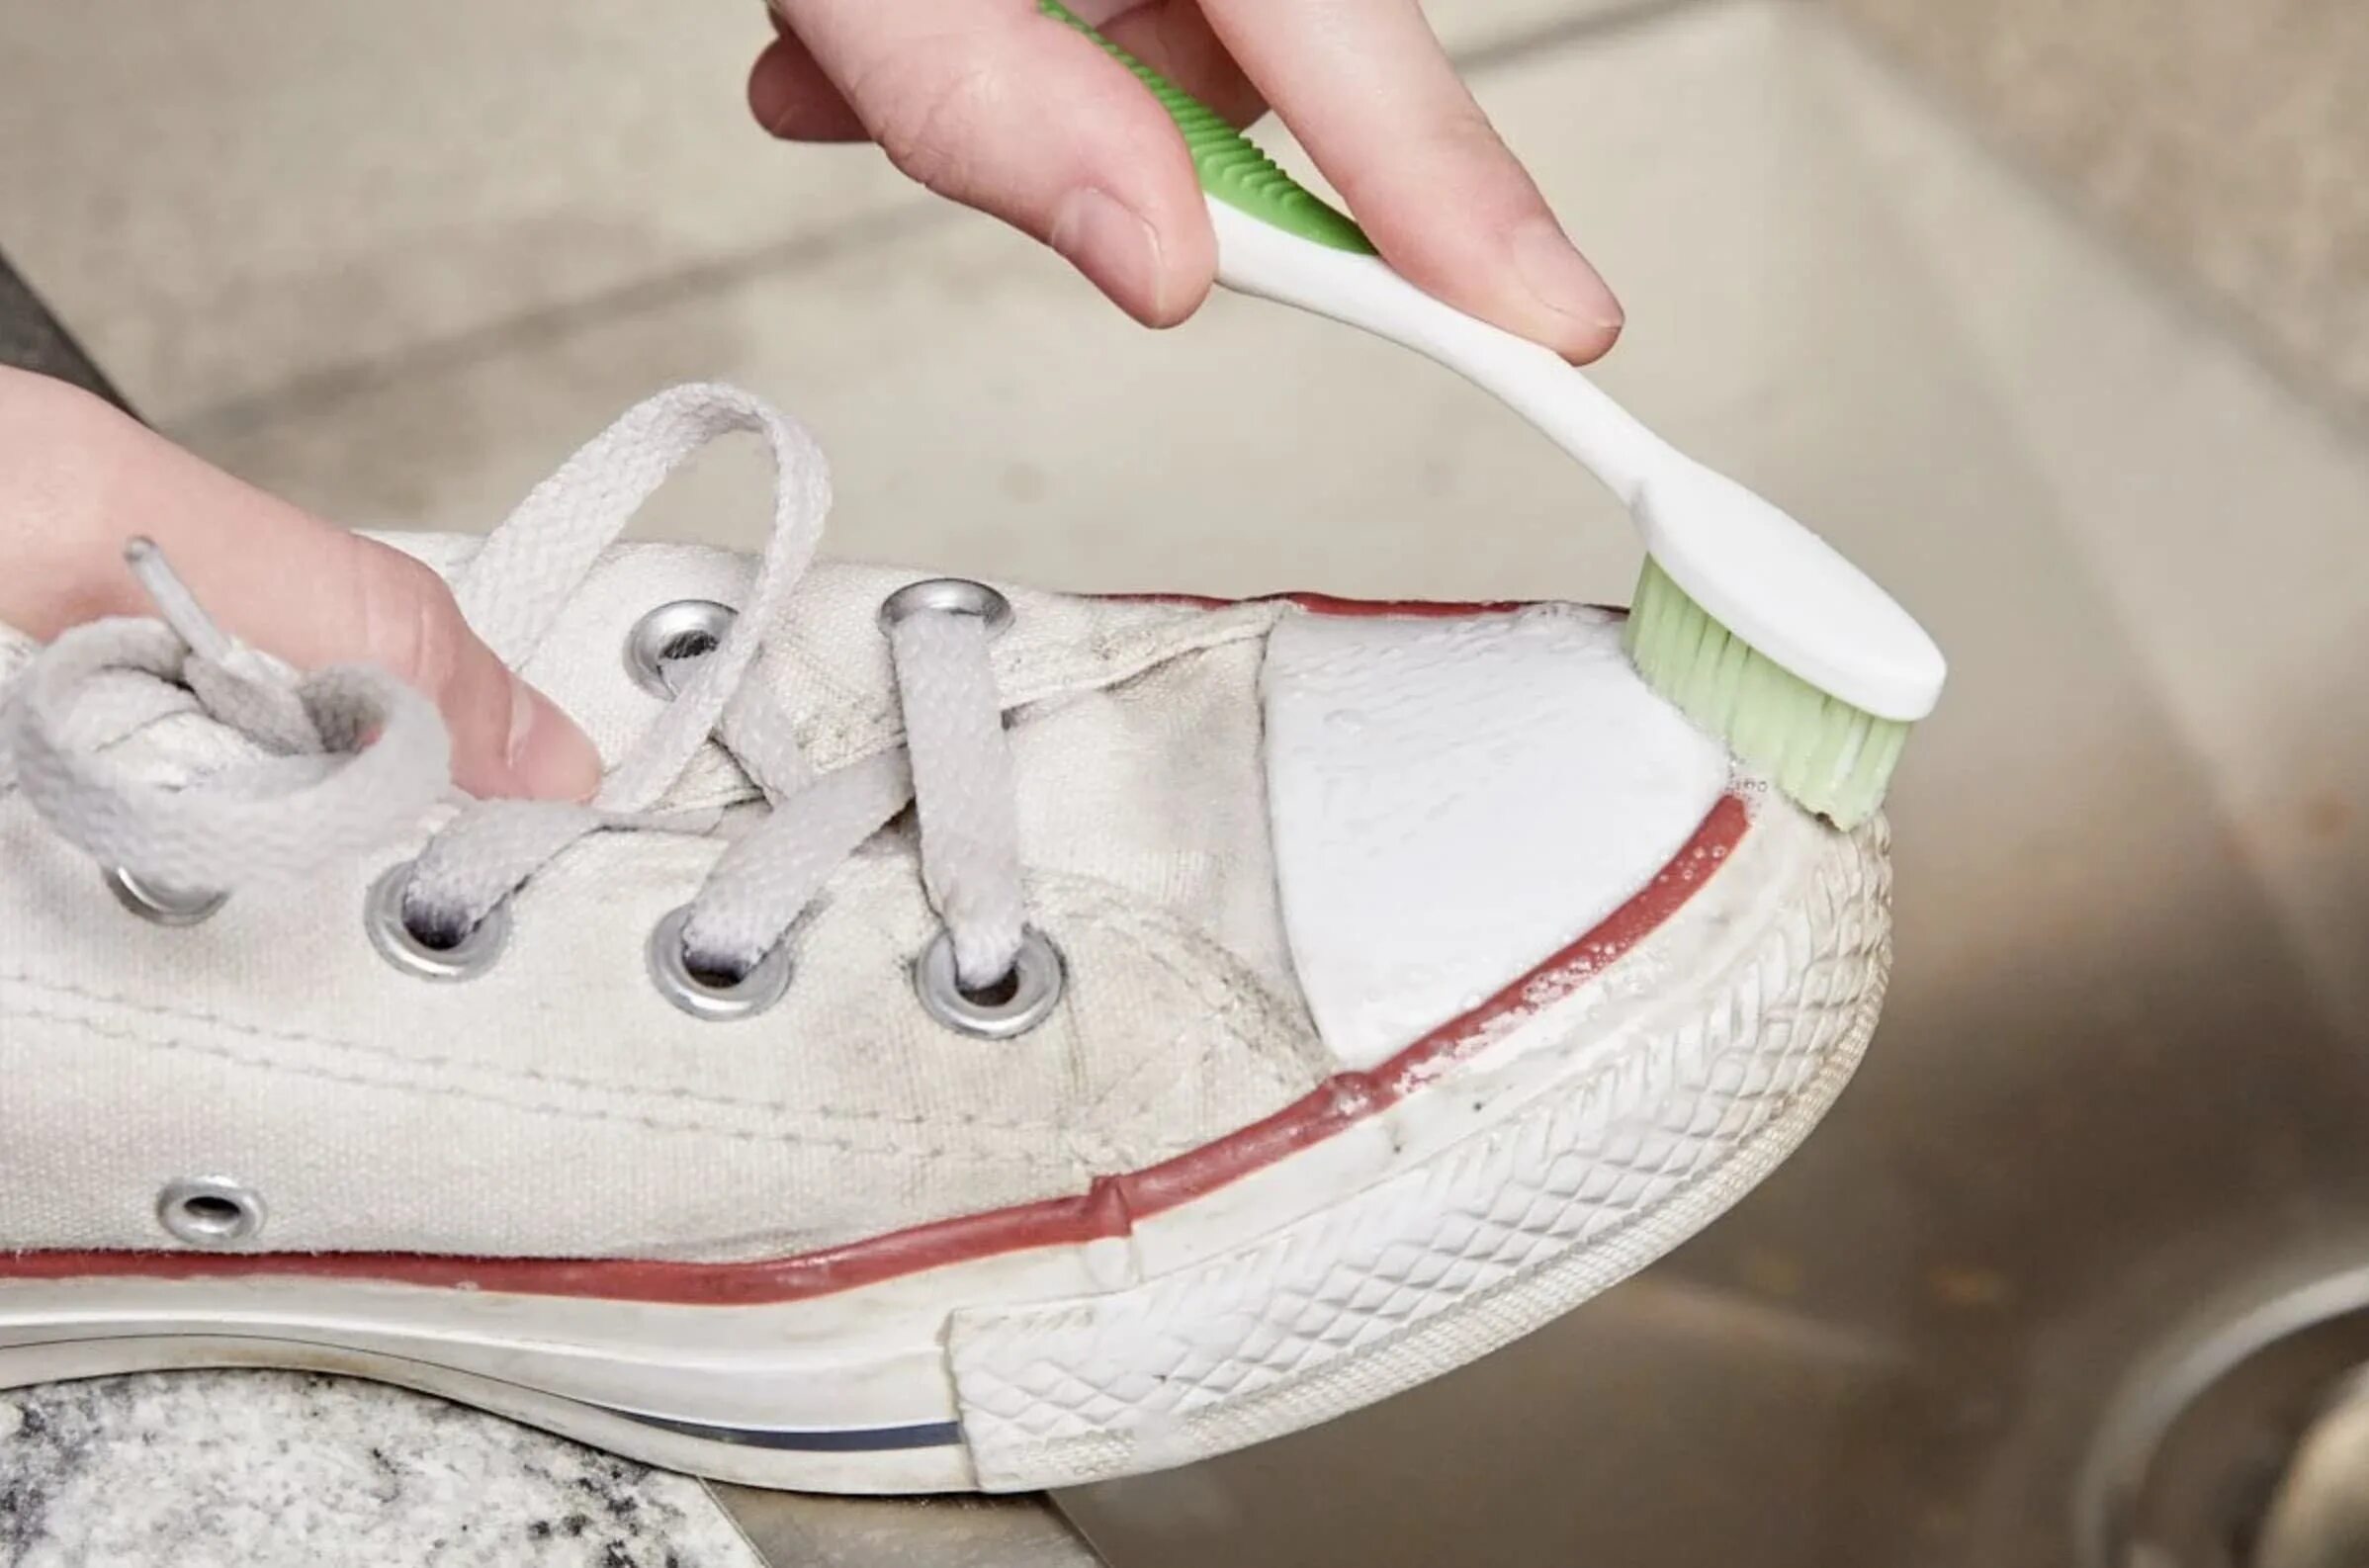 Кеды в клею. Зубная паста для кроссовок. Протирает белую кеды салфеткой. Очистить белую обувь зубной пастой. Чем можно почистить подошву